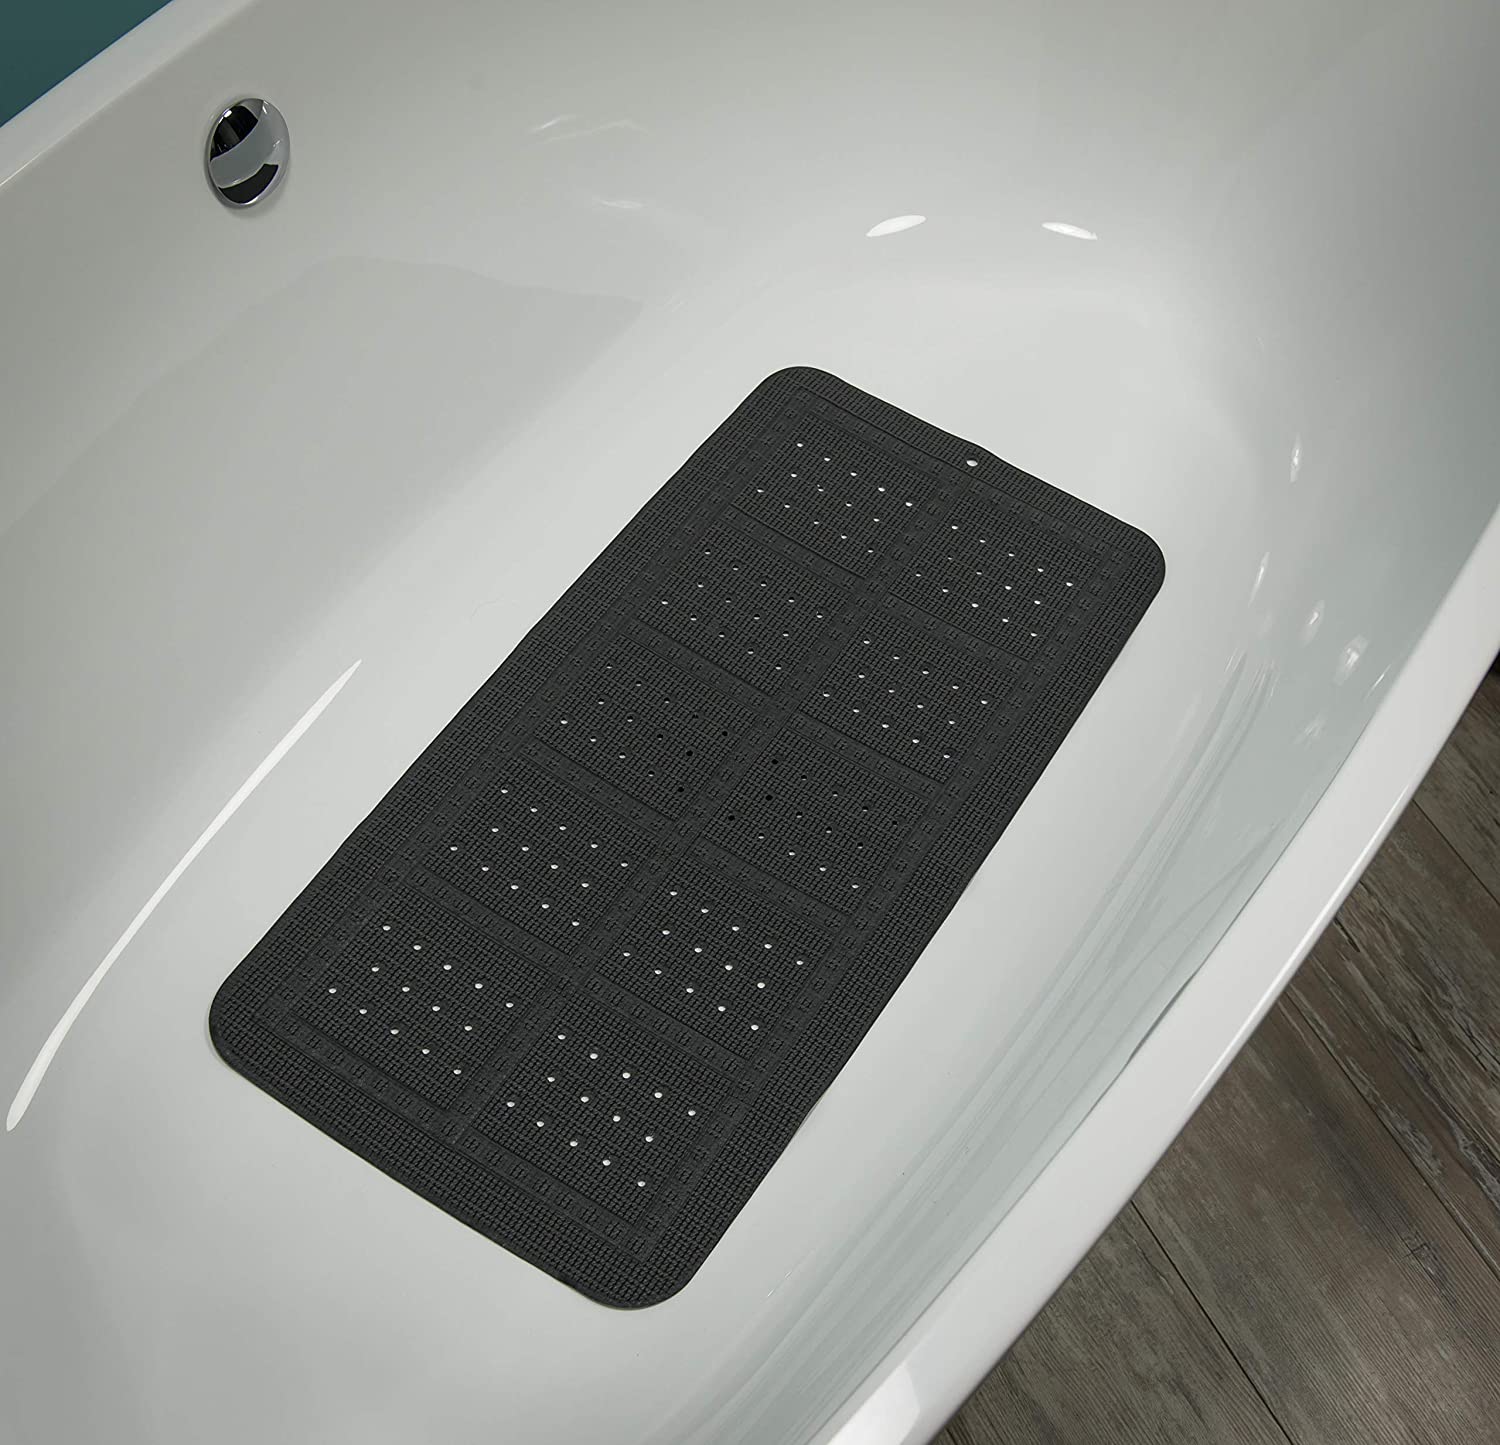 Unilux Badewanneneinlage, Sicherheitseinlage für Badewanne und Dusche, Farbe: Anthrazit, Größe: 70x35 cm